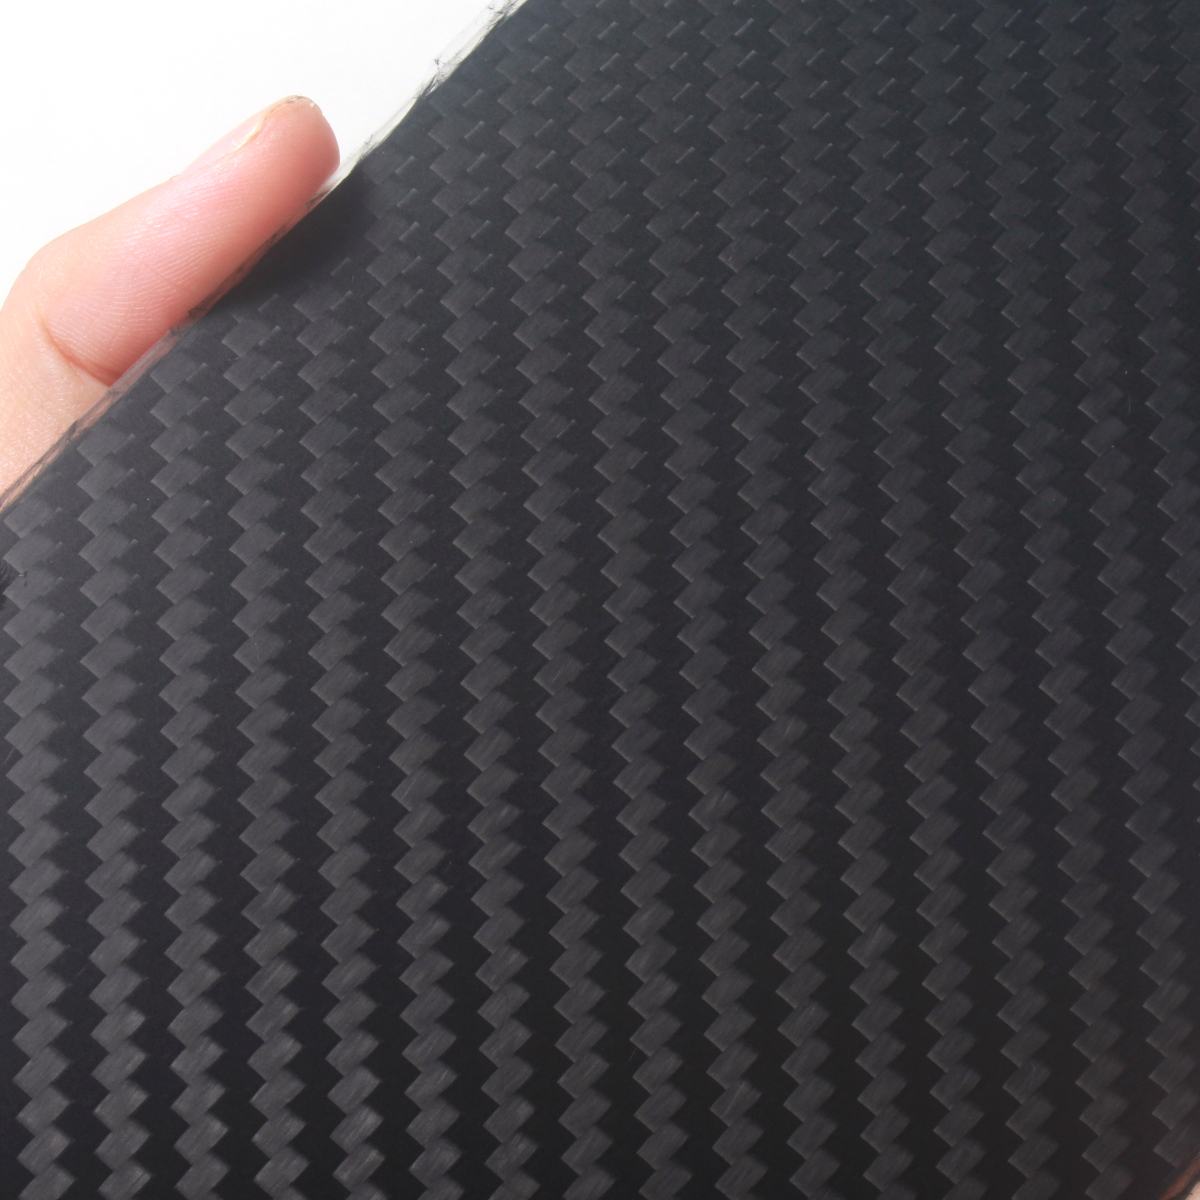 Plain/ Twill Weave Carbon Fiber Sheet 1mm x 100mm x 250mm 